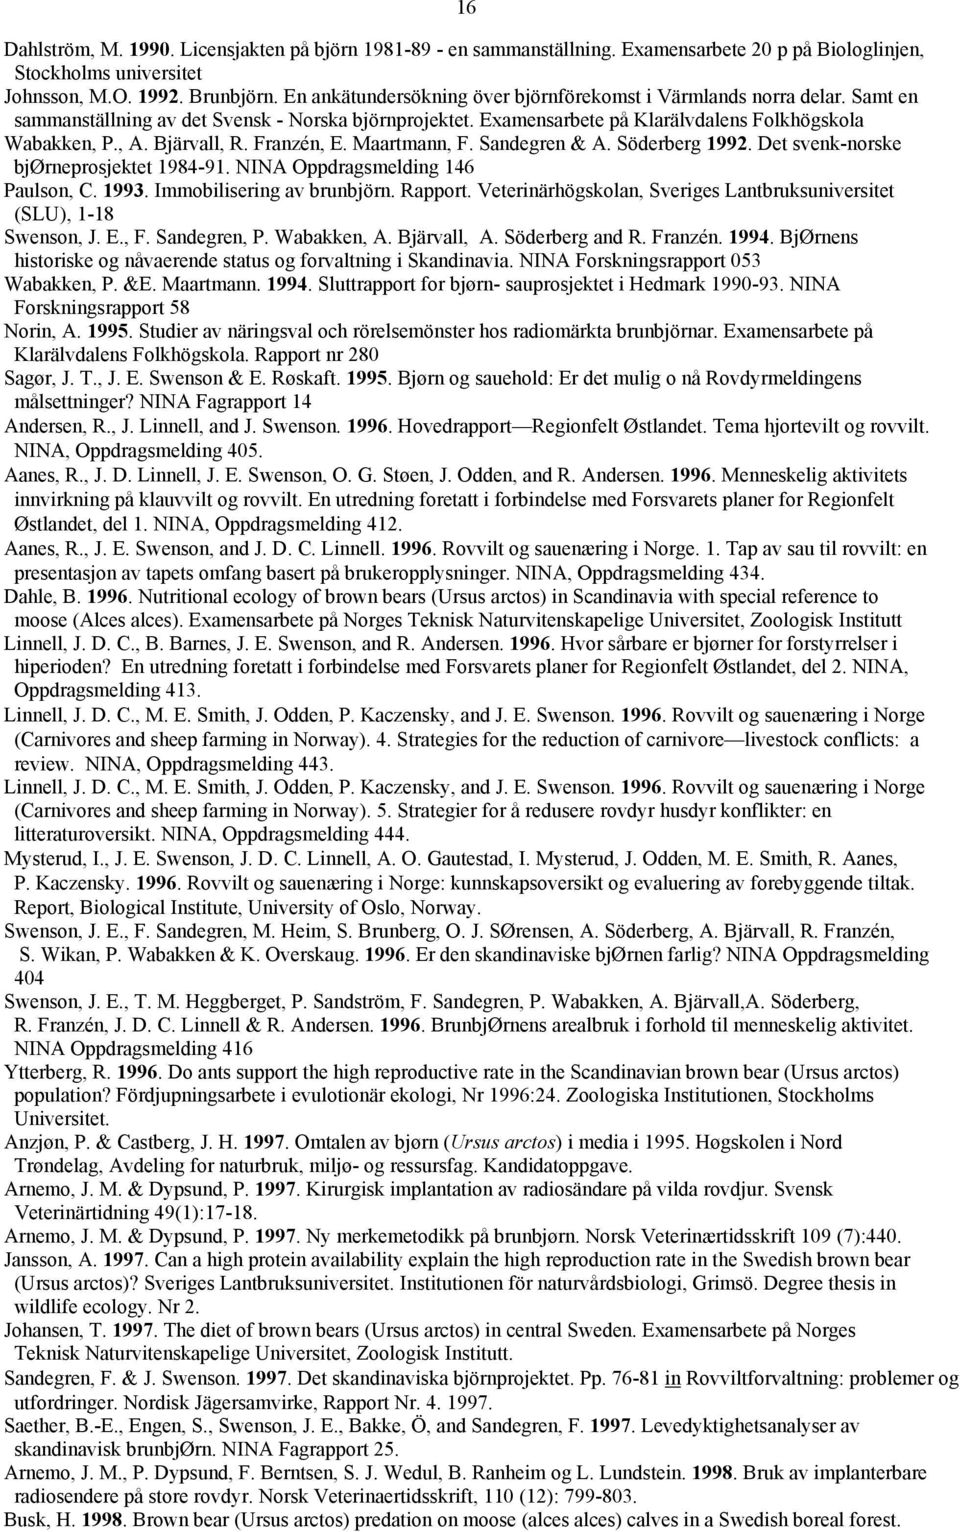 Bjärvall, R. Franzén, E. Maartmann, F. Sandegren & A. Söderberg 1992. Det svenk-norske bjørneprosjektet 1984-91. NINA Oppdragsmelding 146 Paulson, C. 1993. Immobilisering av brunbjörn. Rapport.